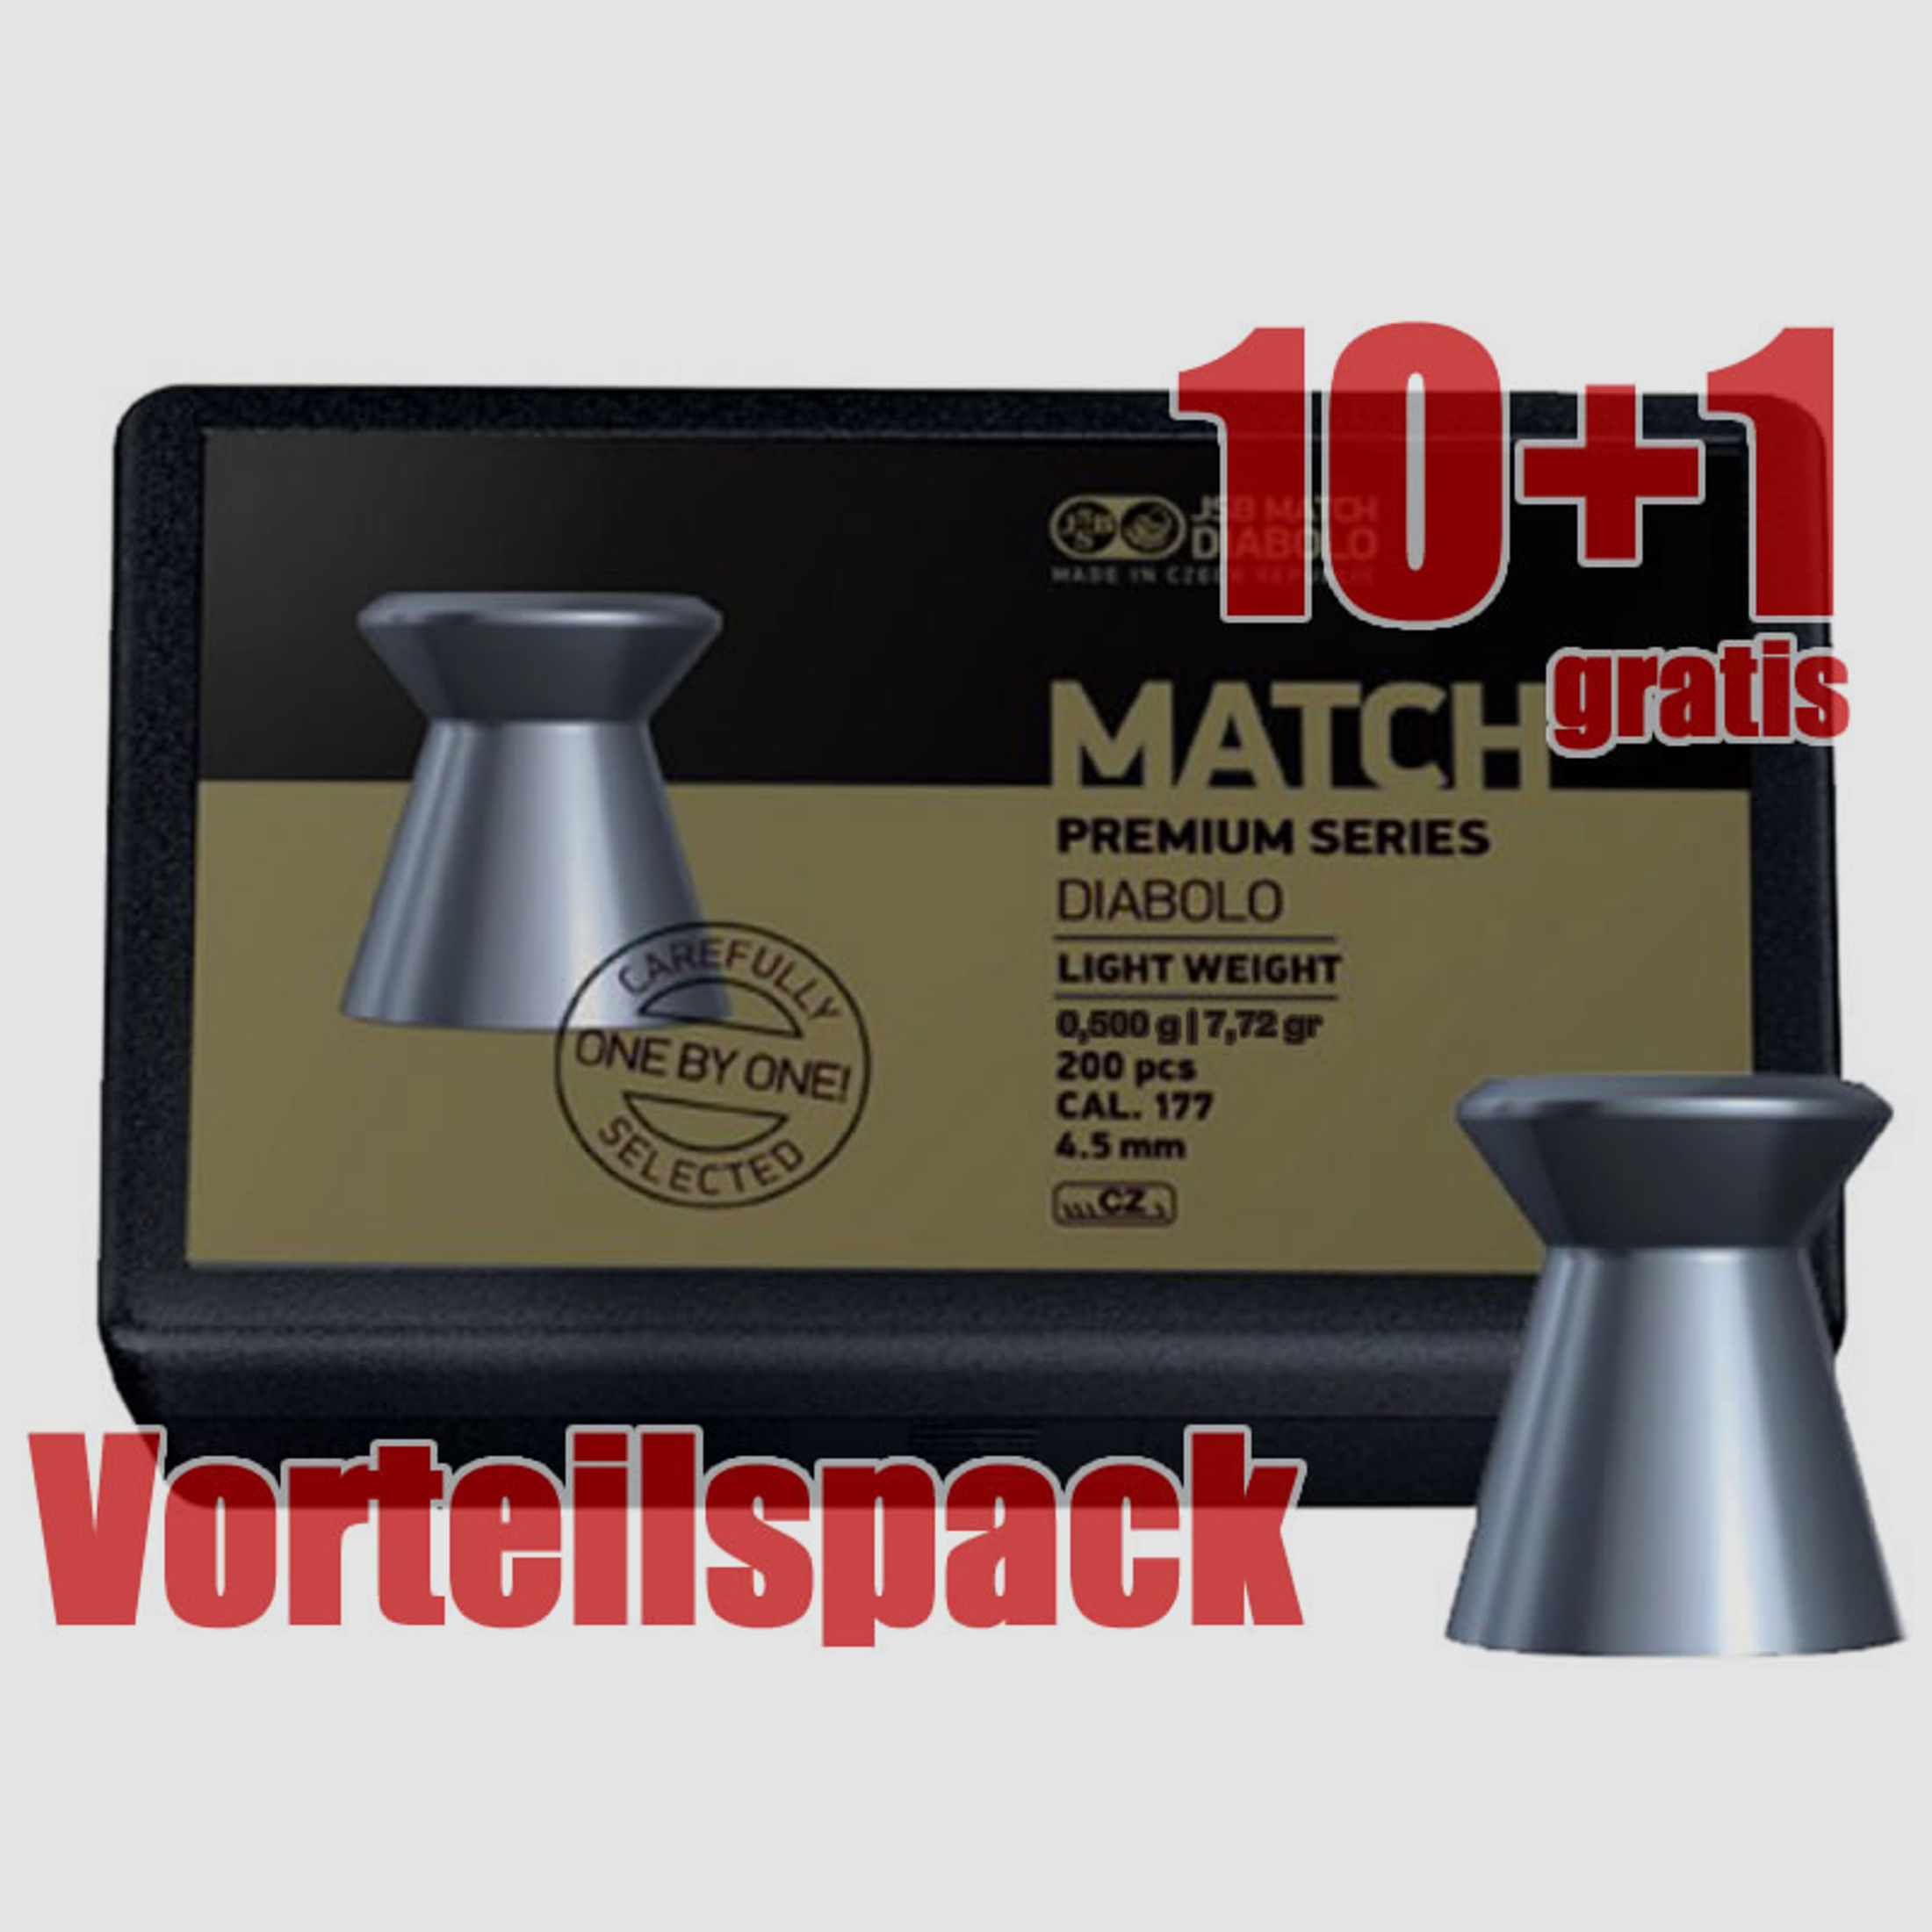 10+1 GRATIS x 200 StĂĽck Flachkopf Diabolo JSB MATCH PREMIUM, Kal. 4,49 mm, 0,500 g